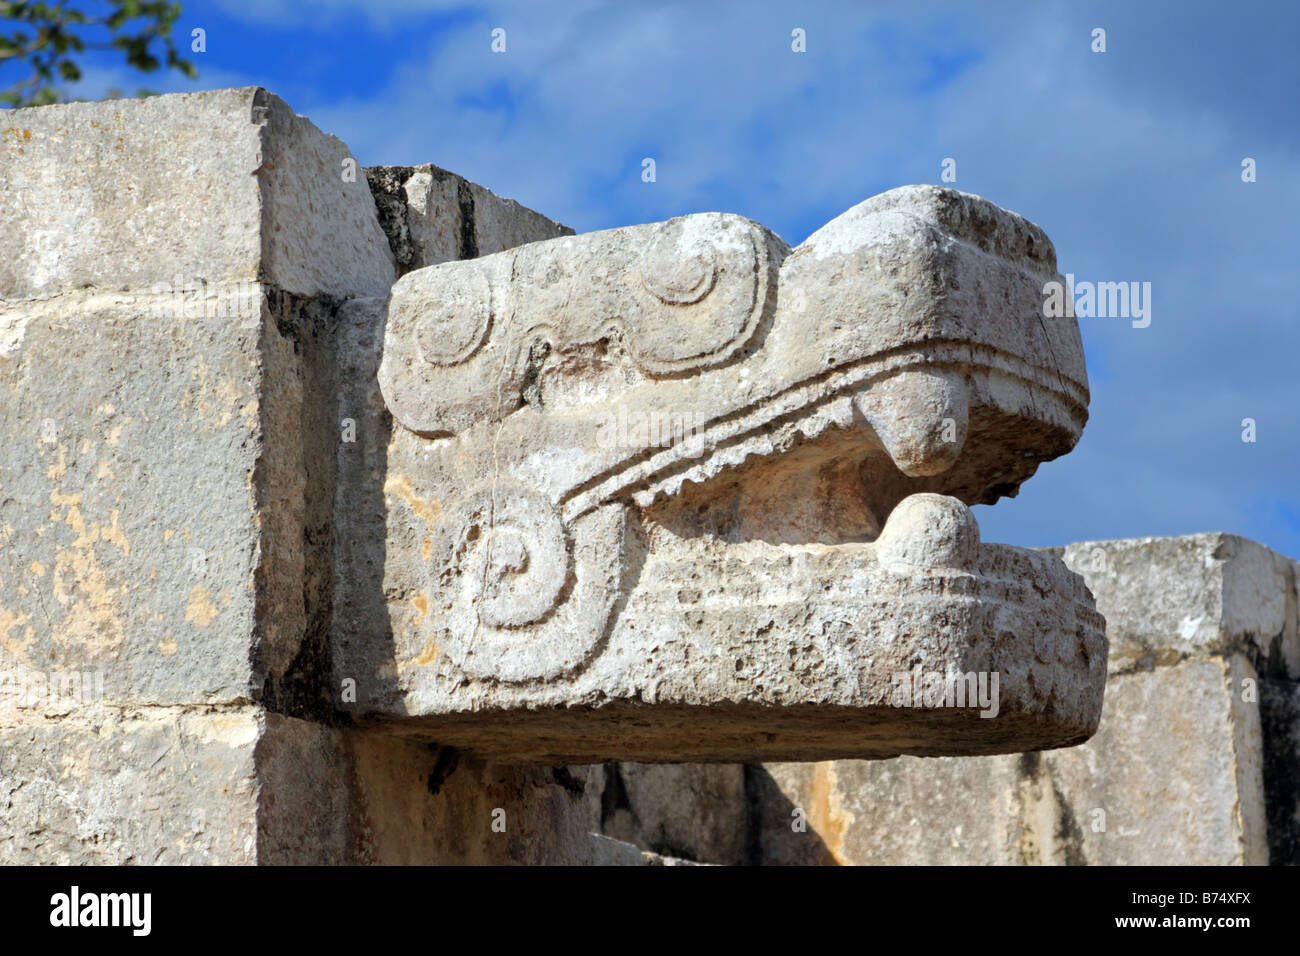 Detalles de la cabeza de serpiente de piedra tallada de la Plataforma de Venus en Chichen Itza Yucanta México Foto de stock